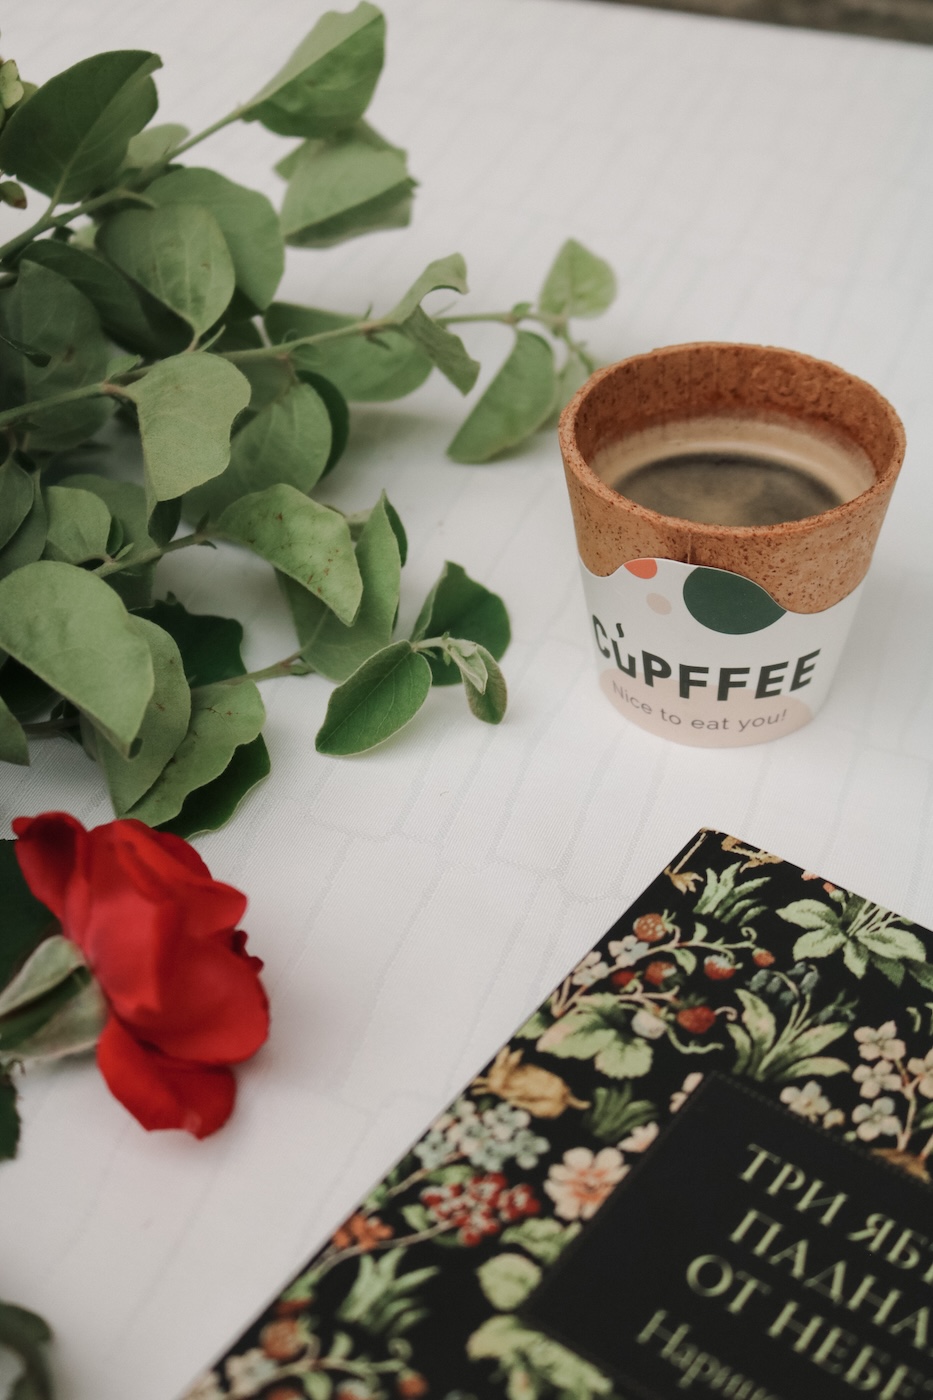 Cupffee – 3